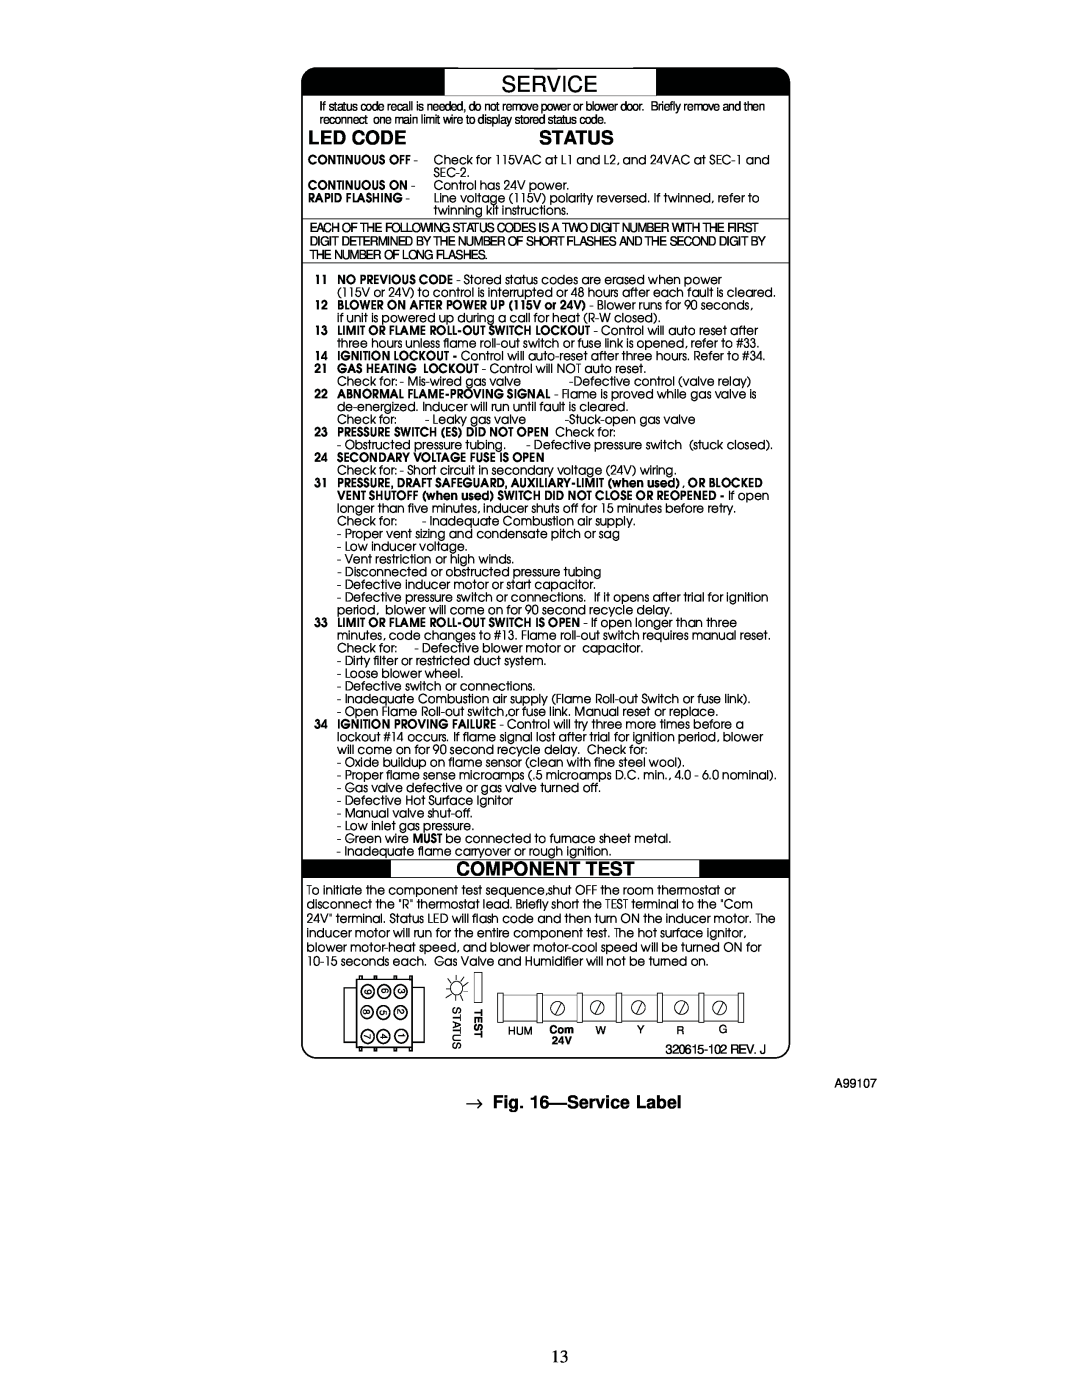 Carrier 58MSA instruction manual Led Code, Status, Component Test, ÐService Label 